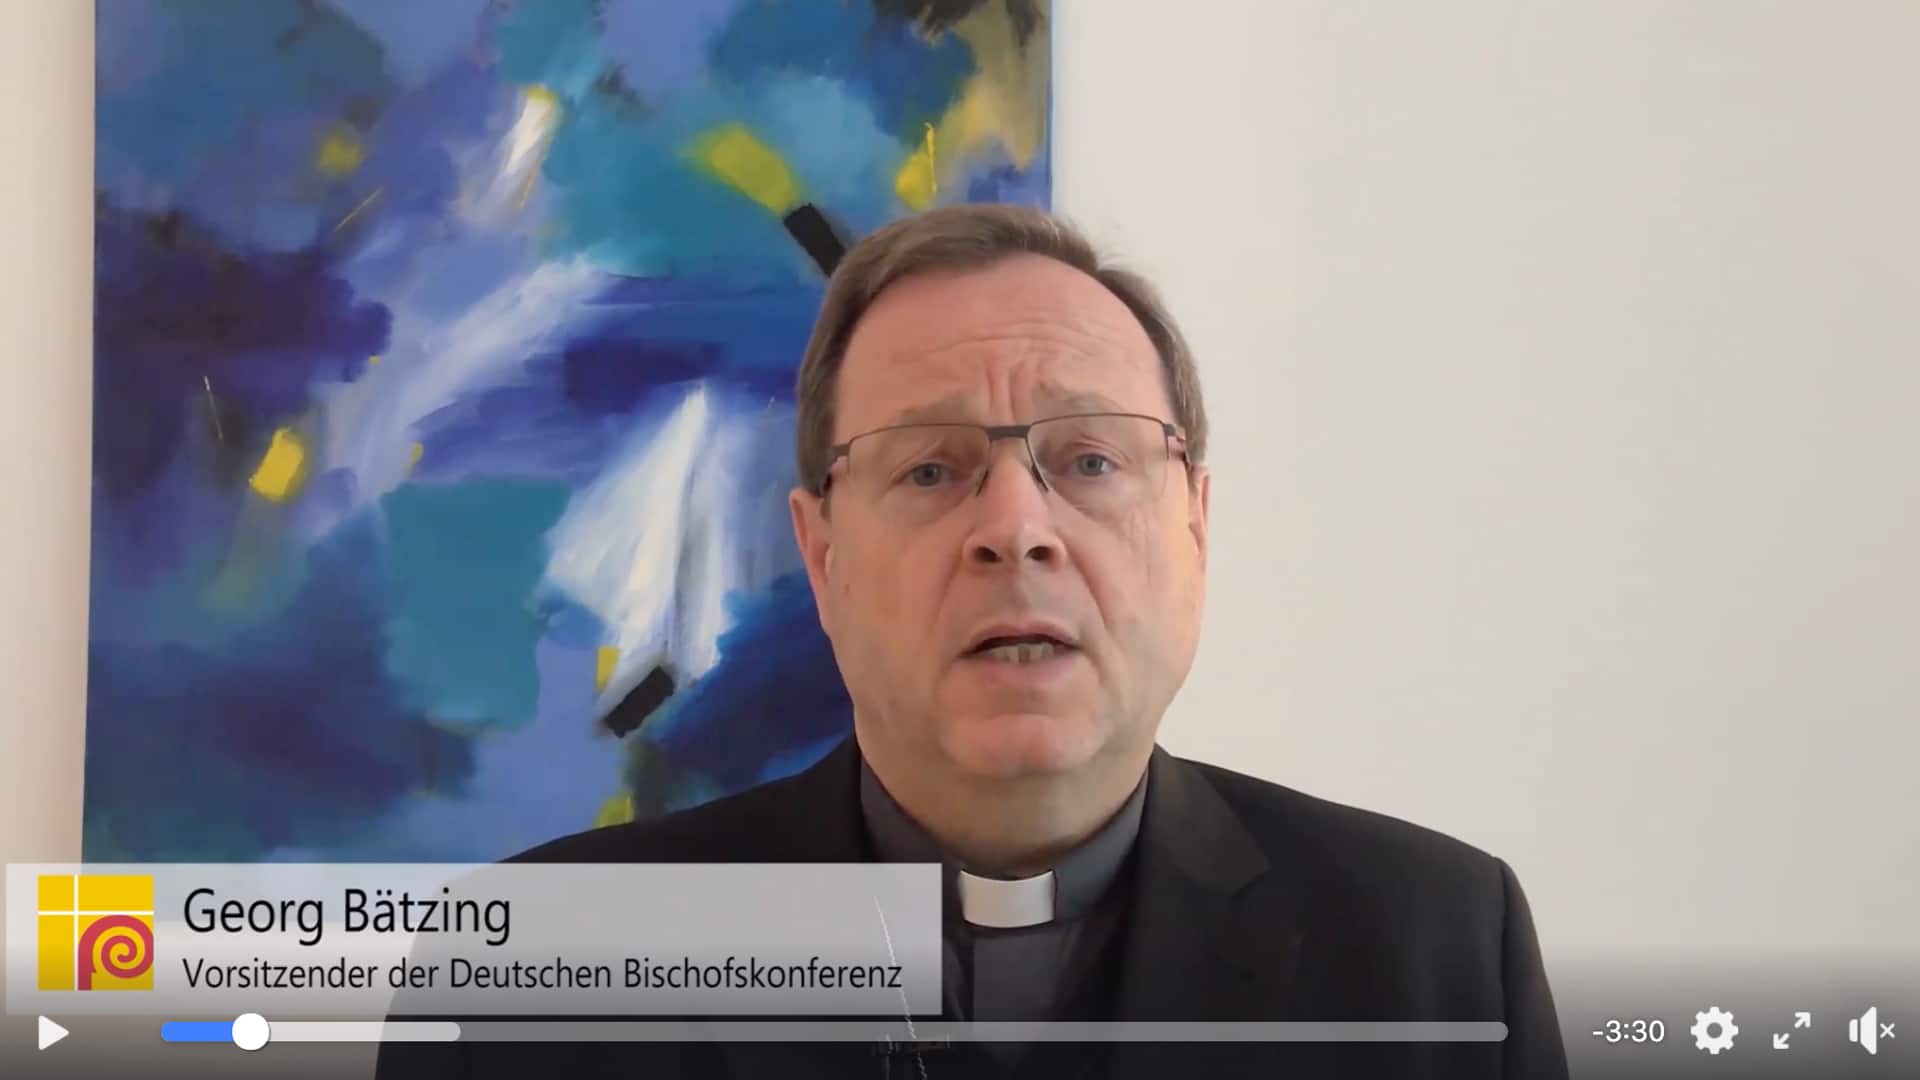 Der Vorsitzende der Deutschen Bischofskonferenz Georg Bätzing